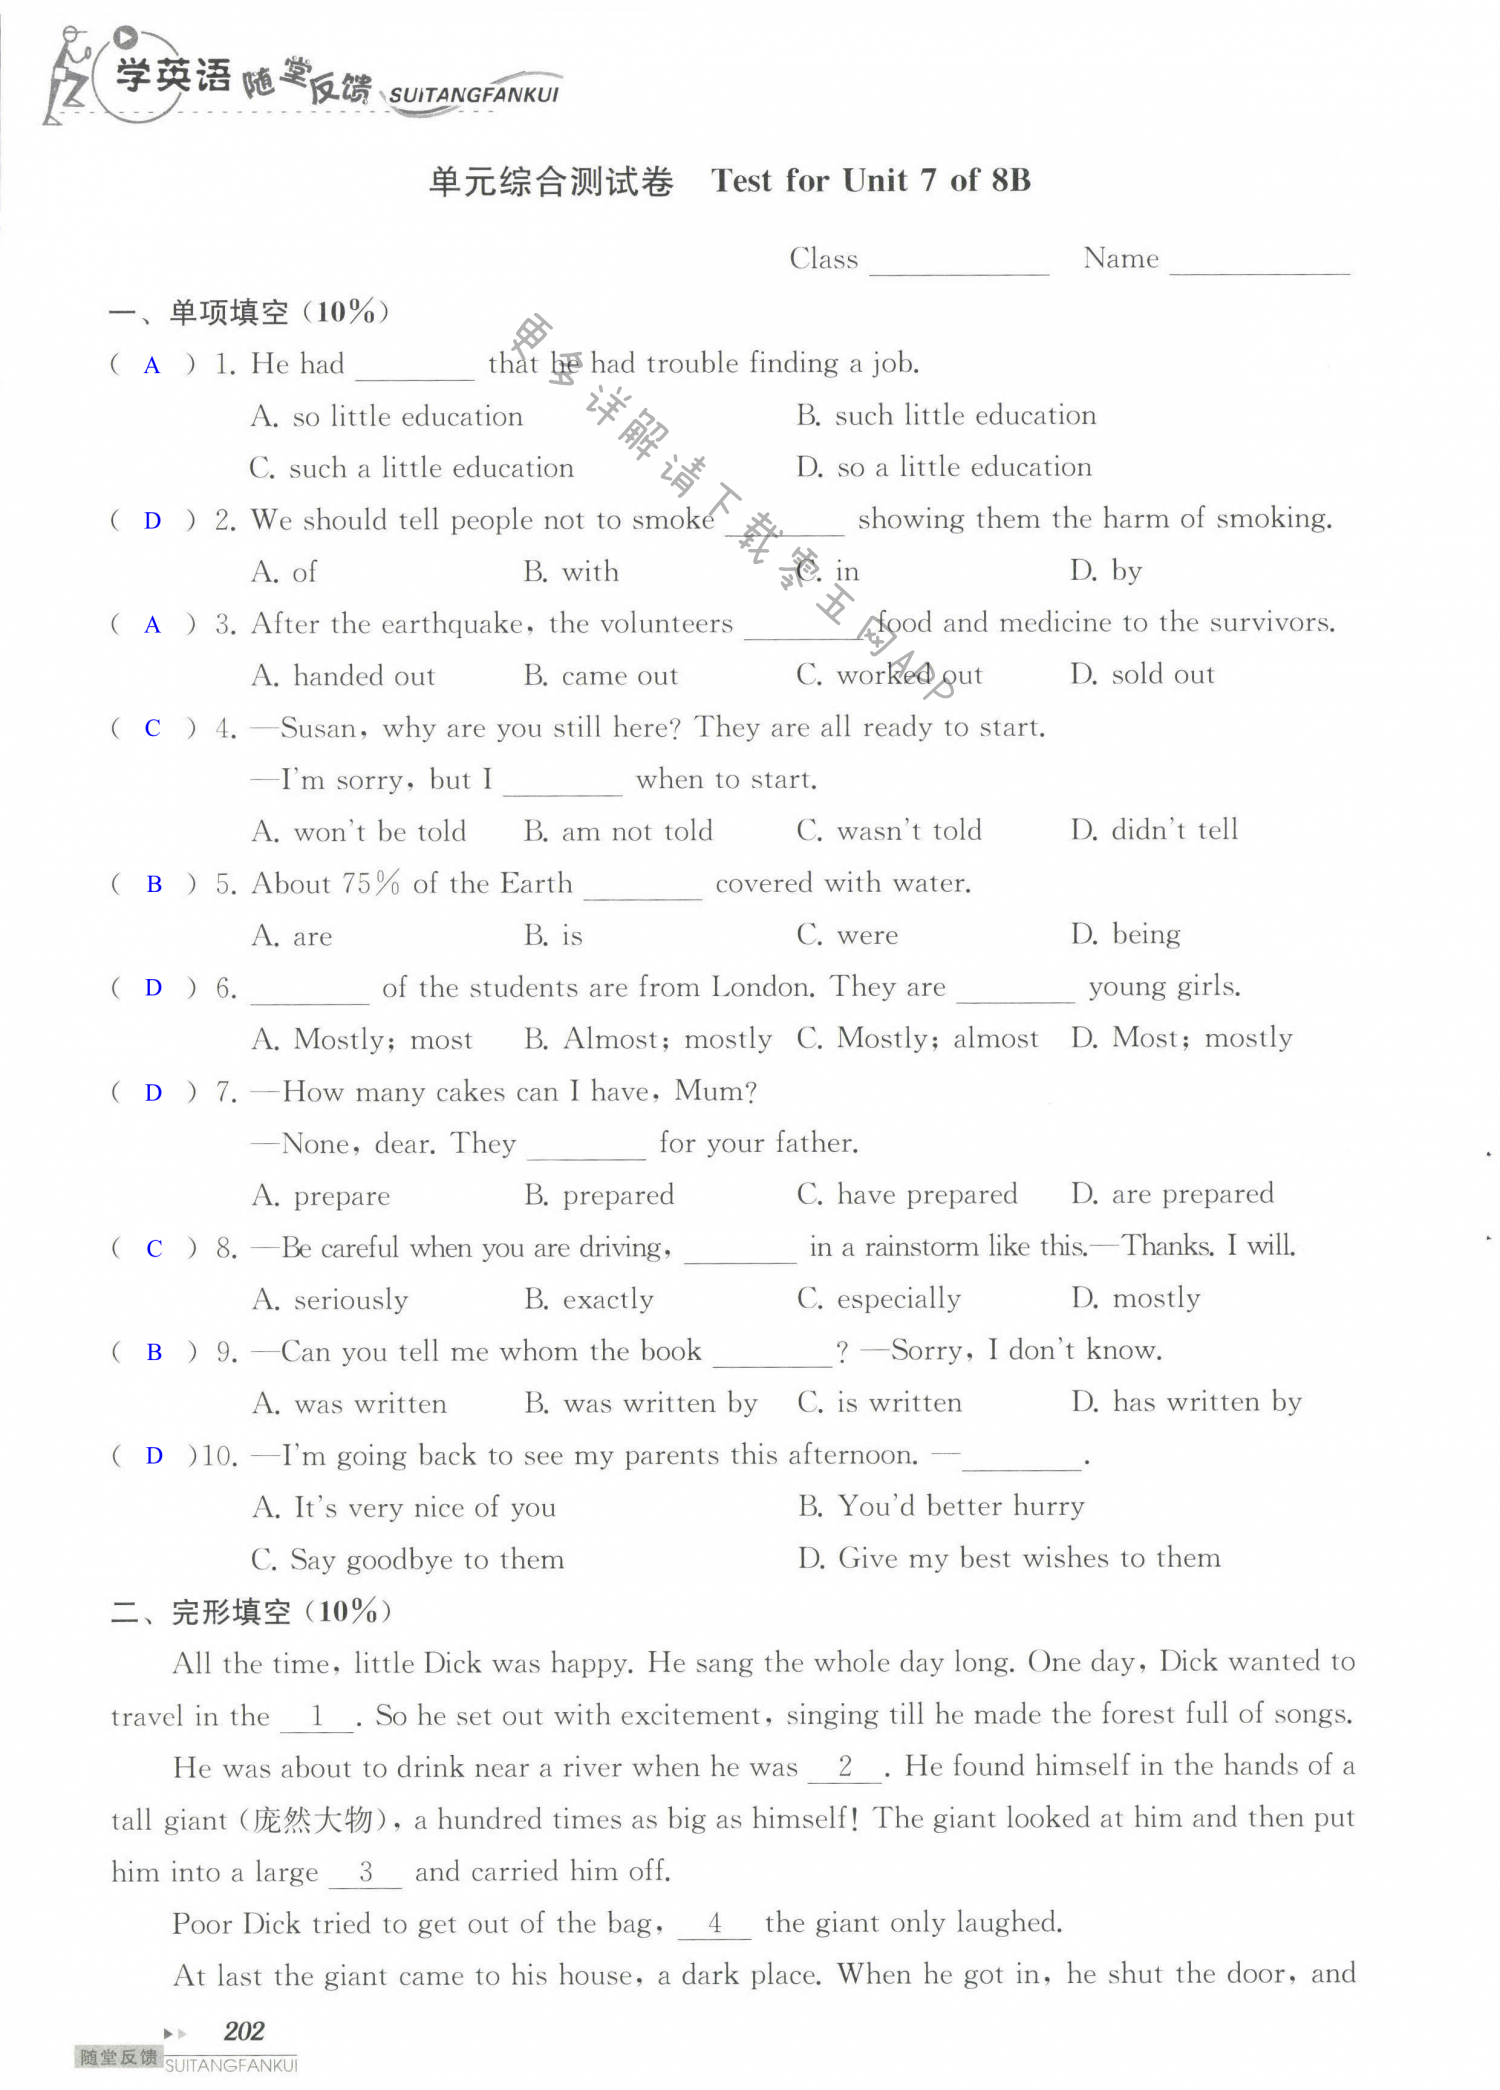 单元综合测试卷 Test for Unit 7 of 8B - 第202页